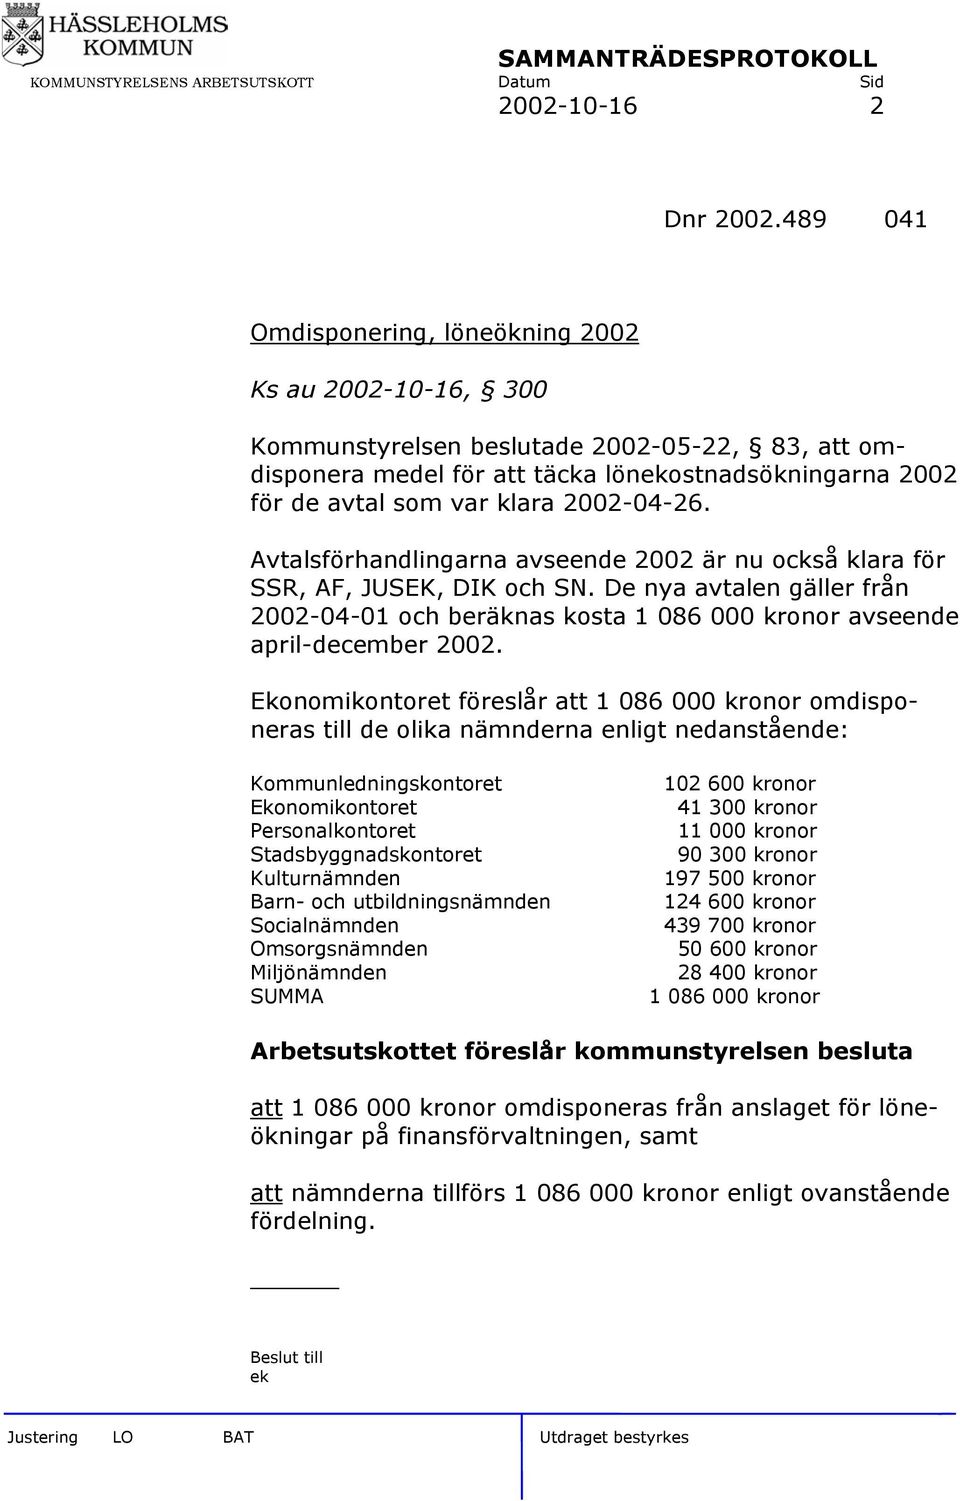 2002-04-26. Avtalsförhandlingarna avseende 2002 är nu också klara för SSR, AF, JUSEK, DIK och SN.